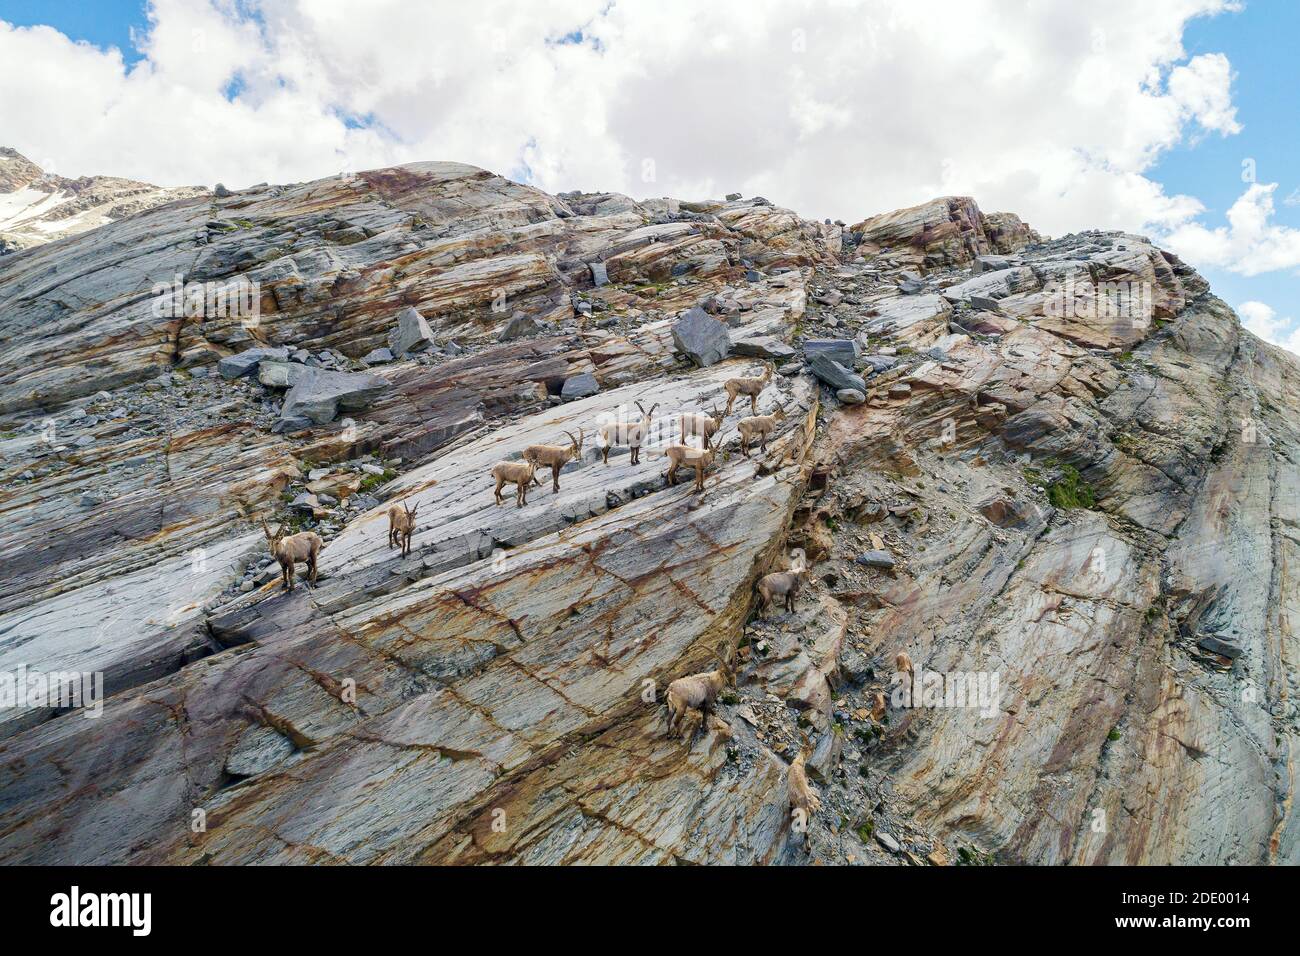 Ibex shoal en las altas montañas, Vista aérea Foto de stock